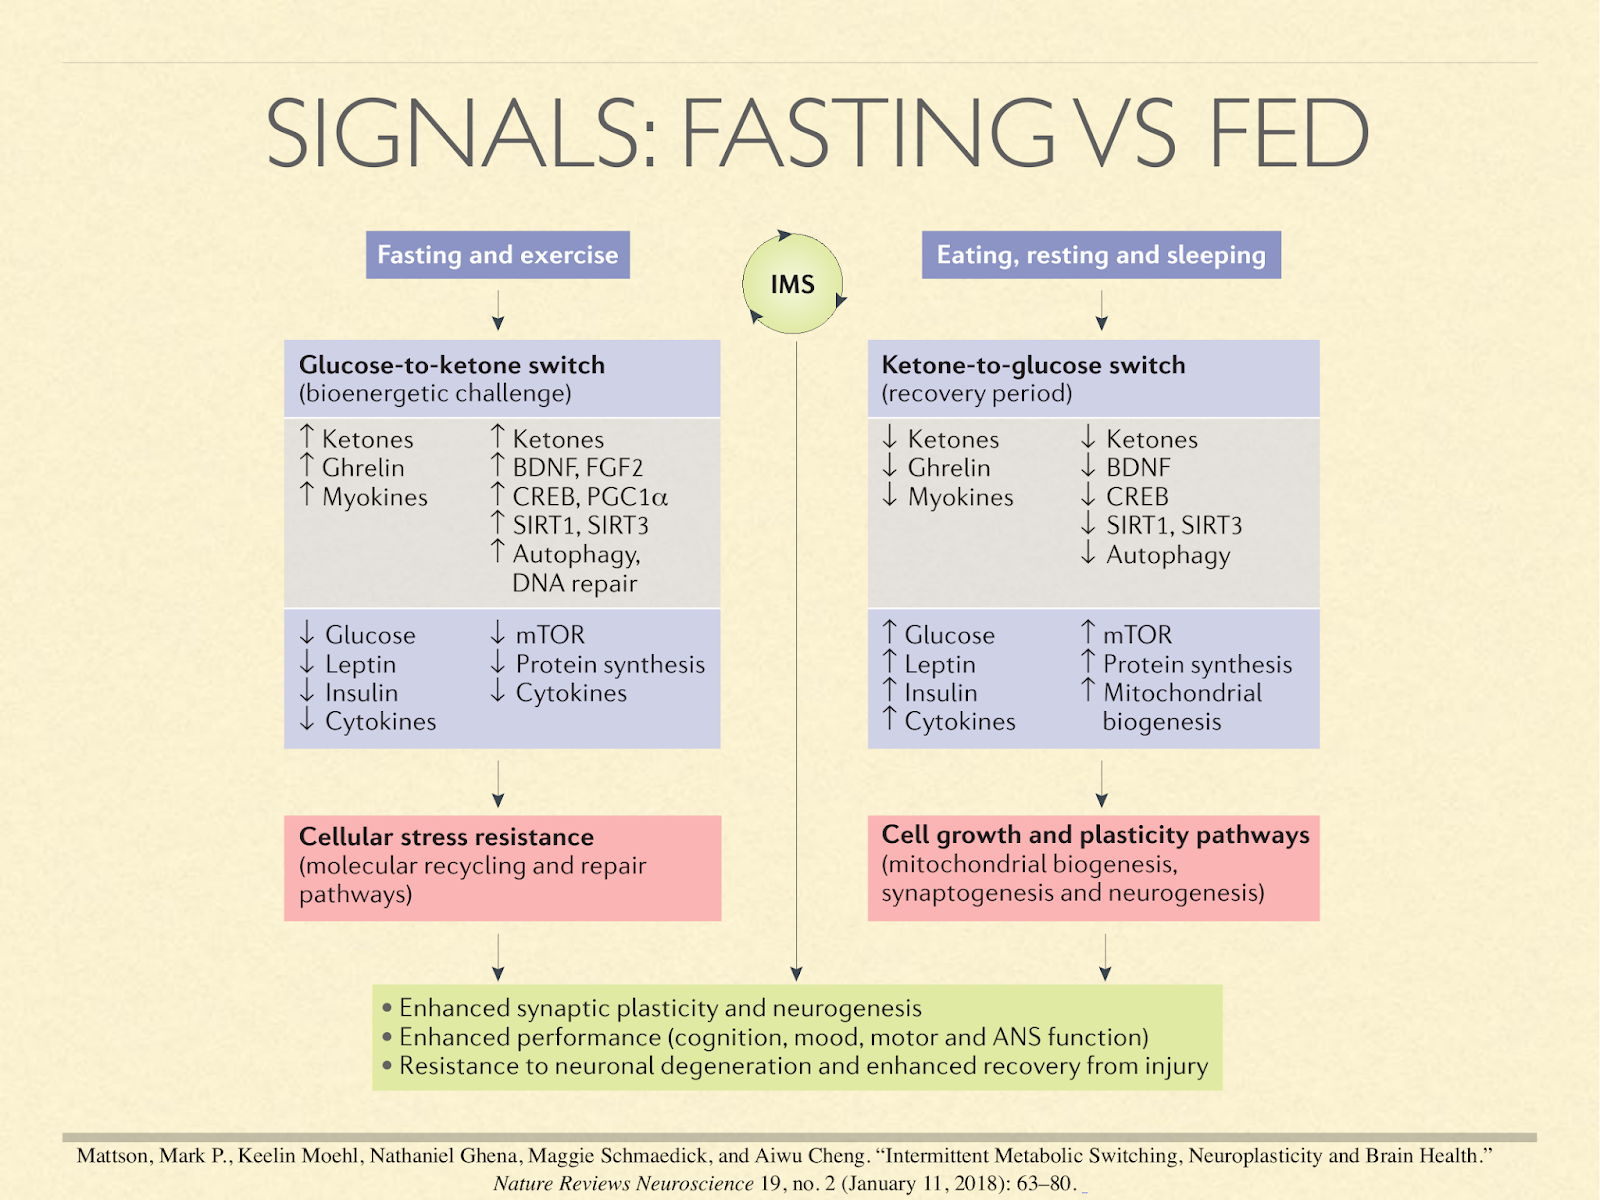 fasting vs fed